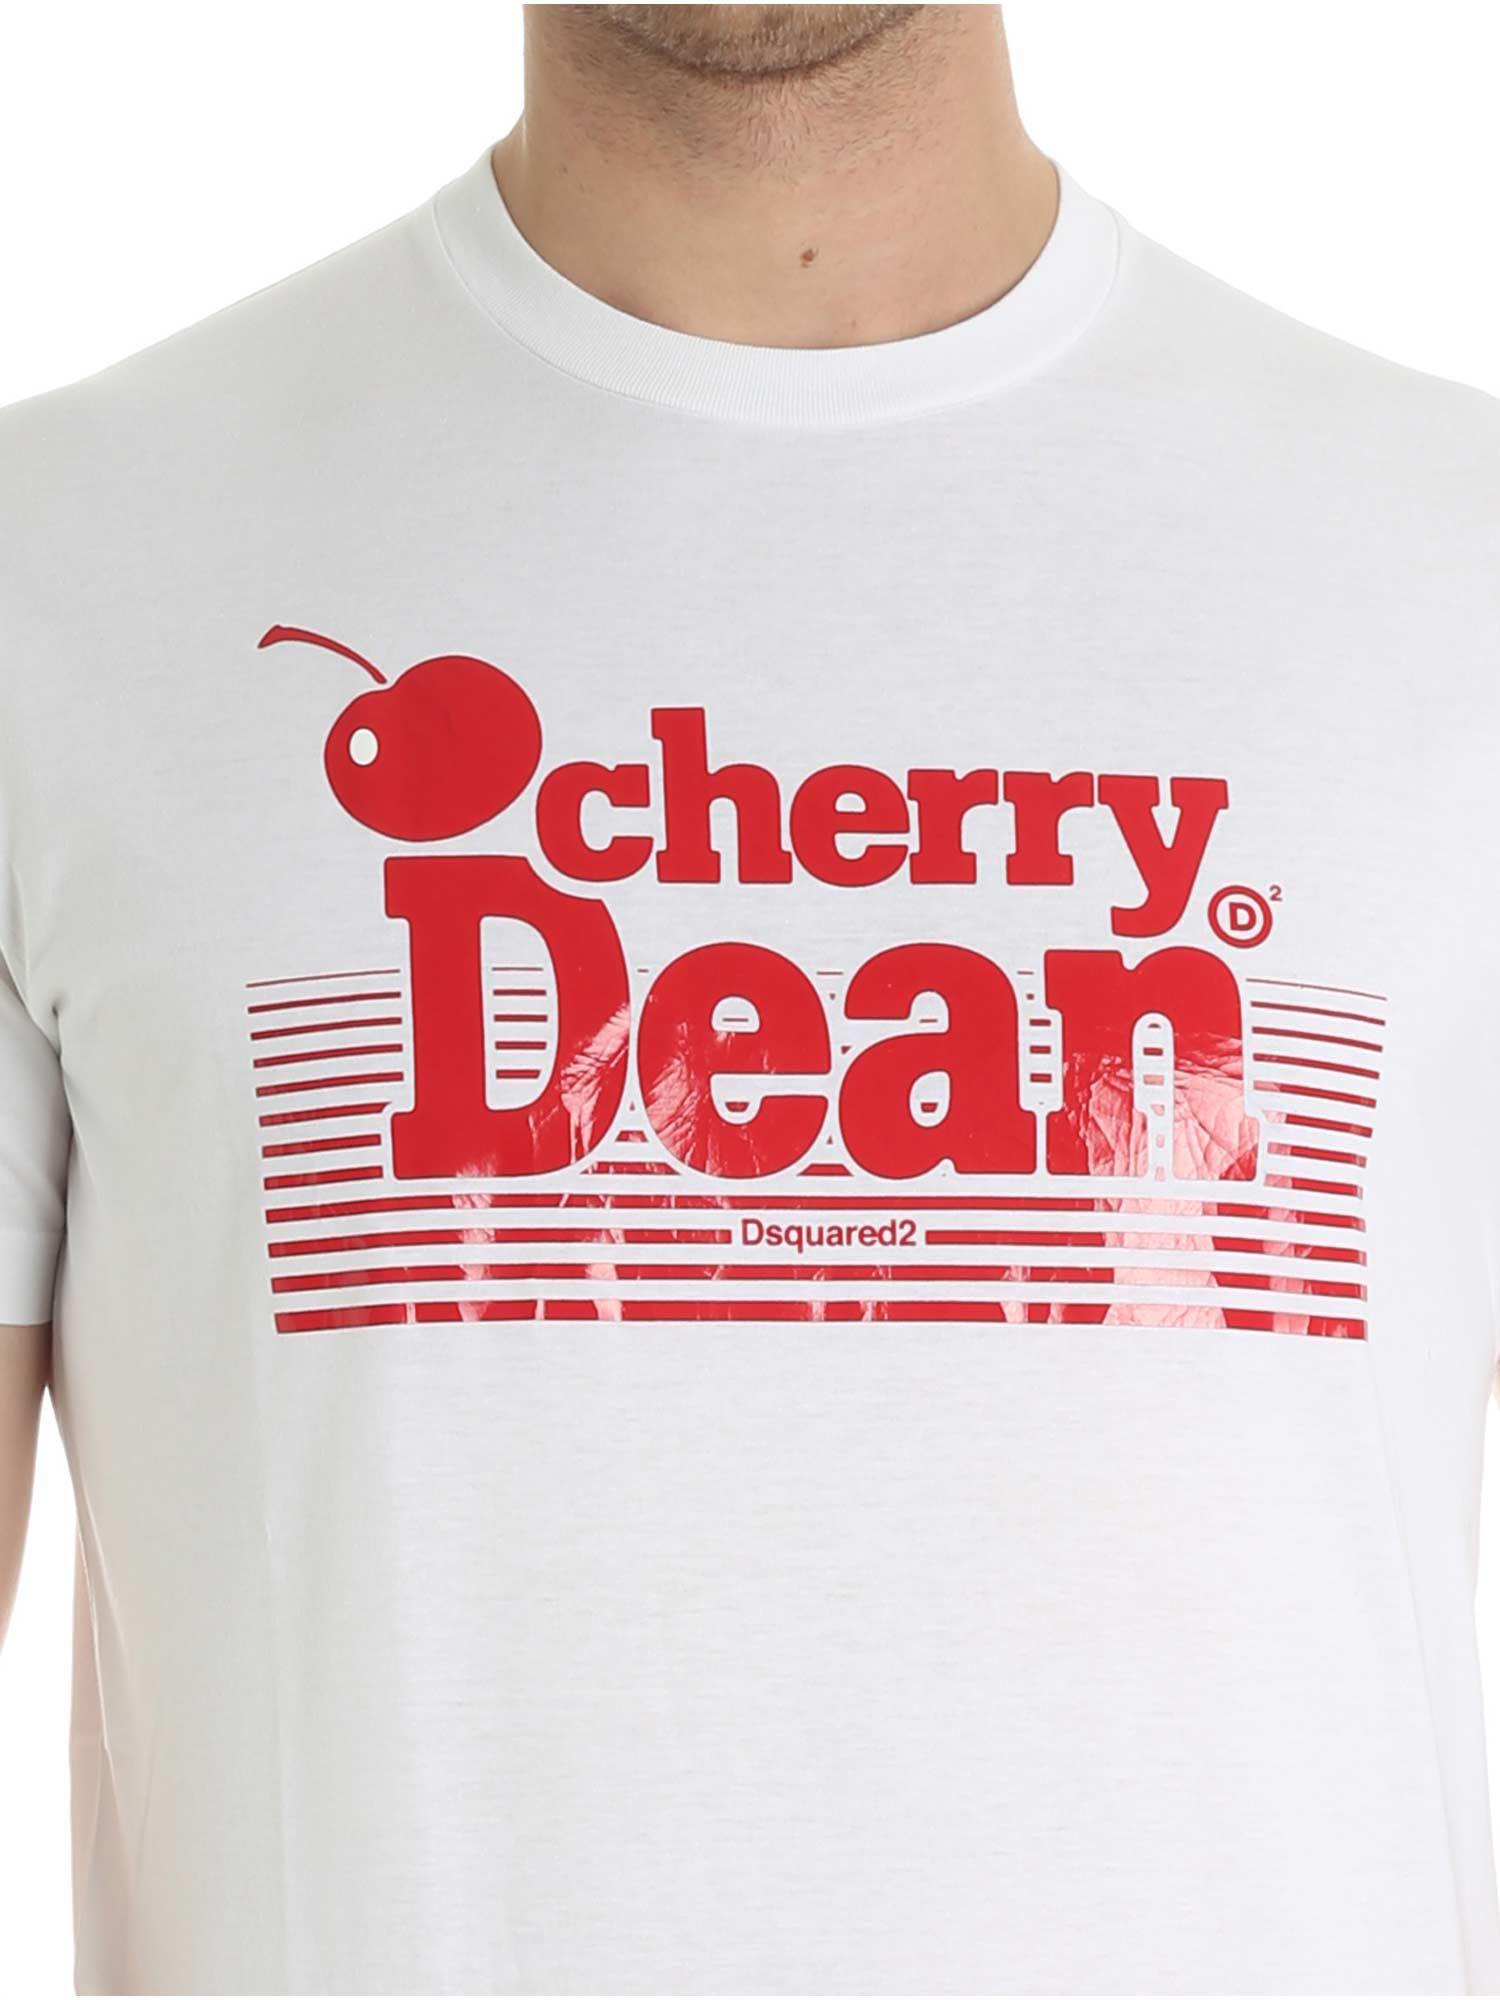 cherry dean t shirt